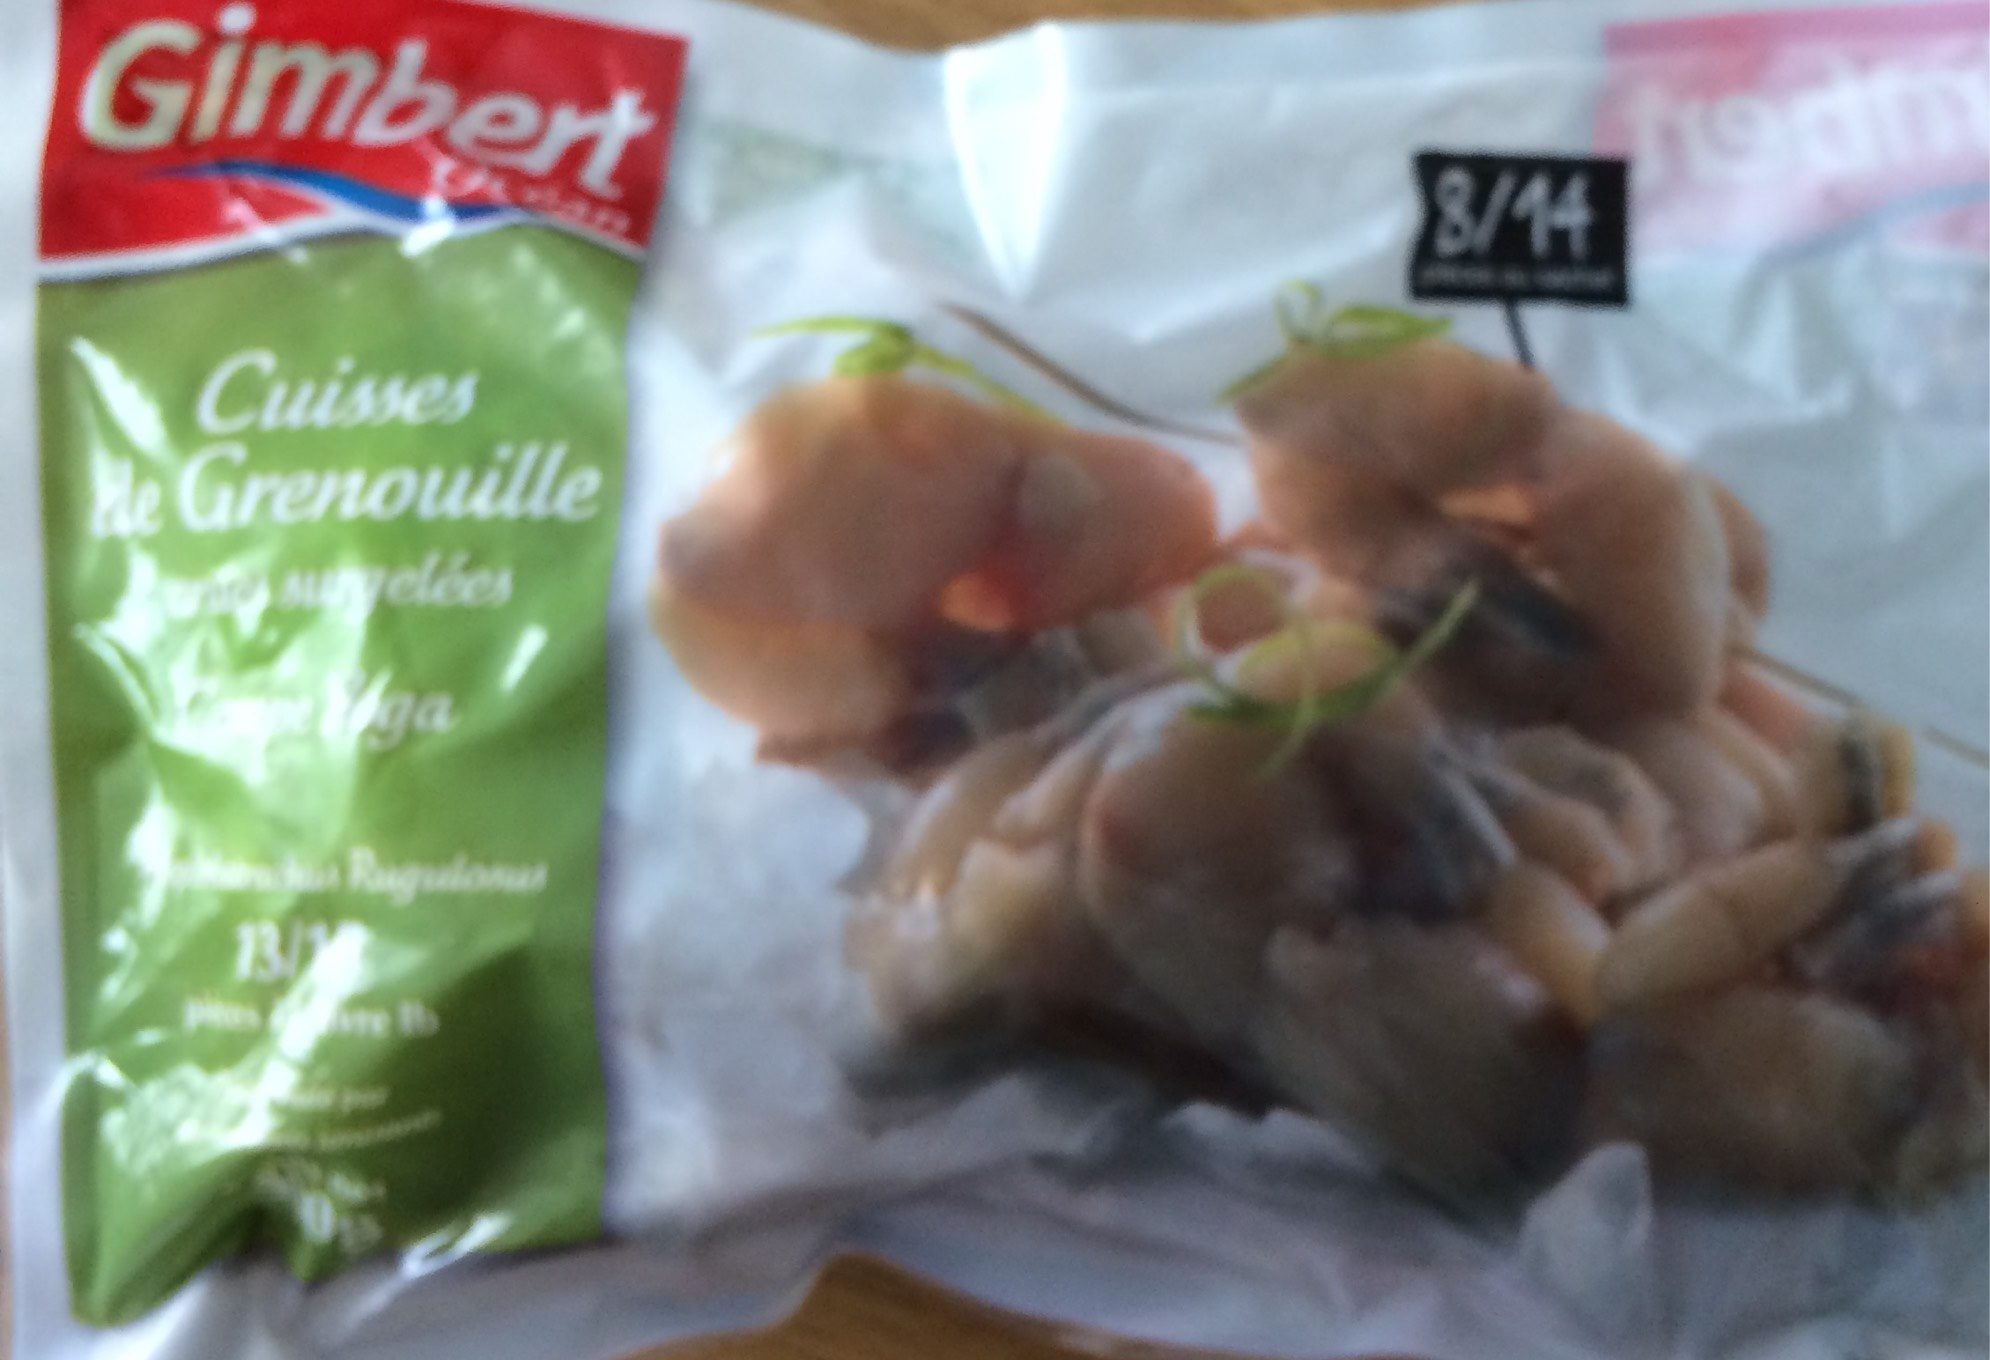 cuisses de grenouille - Product - fr